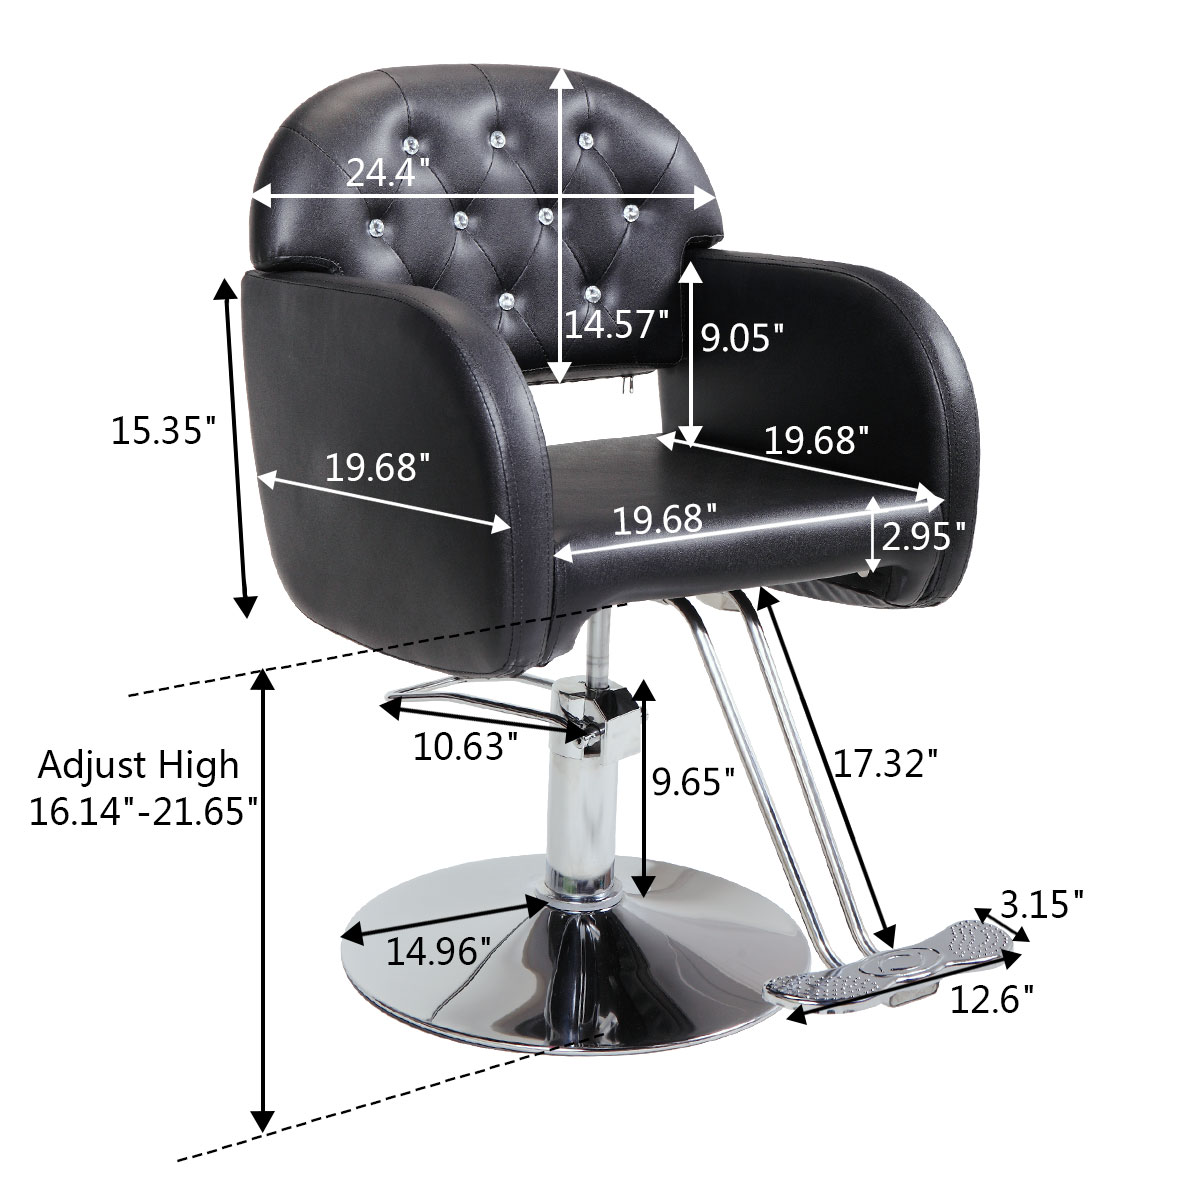 Hydraulic Tufted Salon Styling Chair W/Crystal-deco | Jaxpety